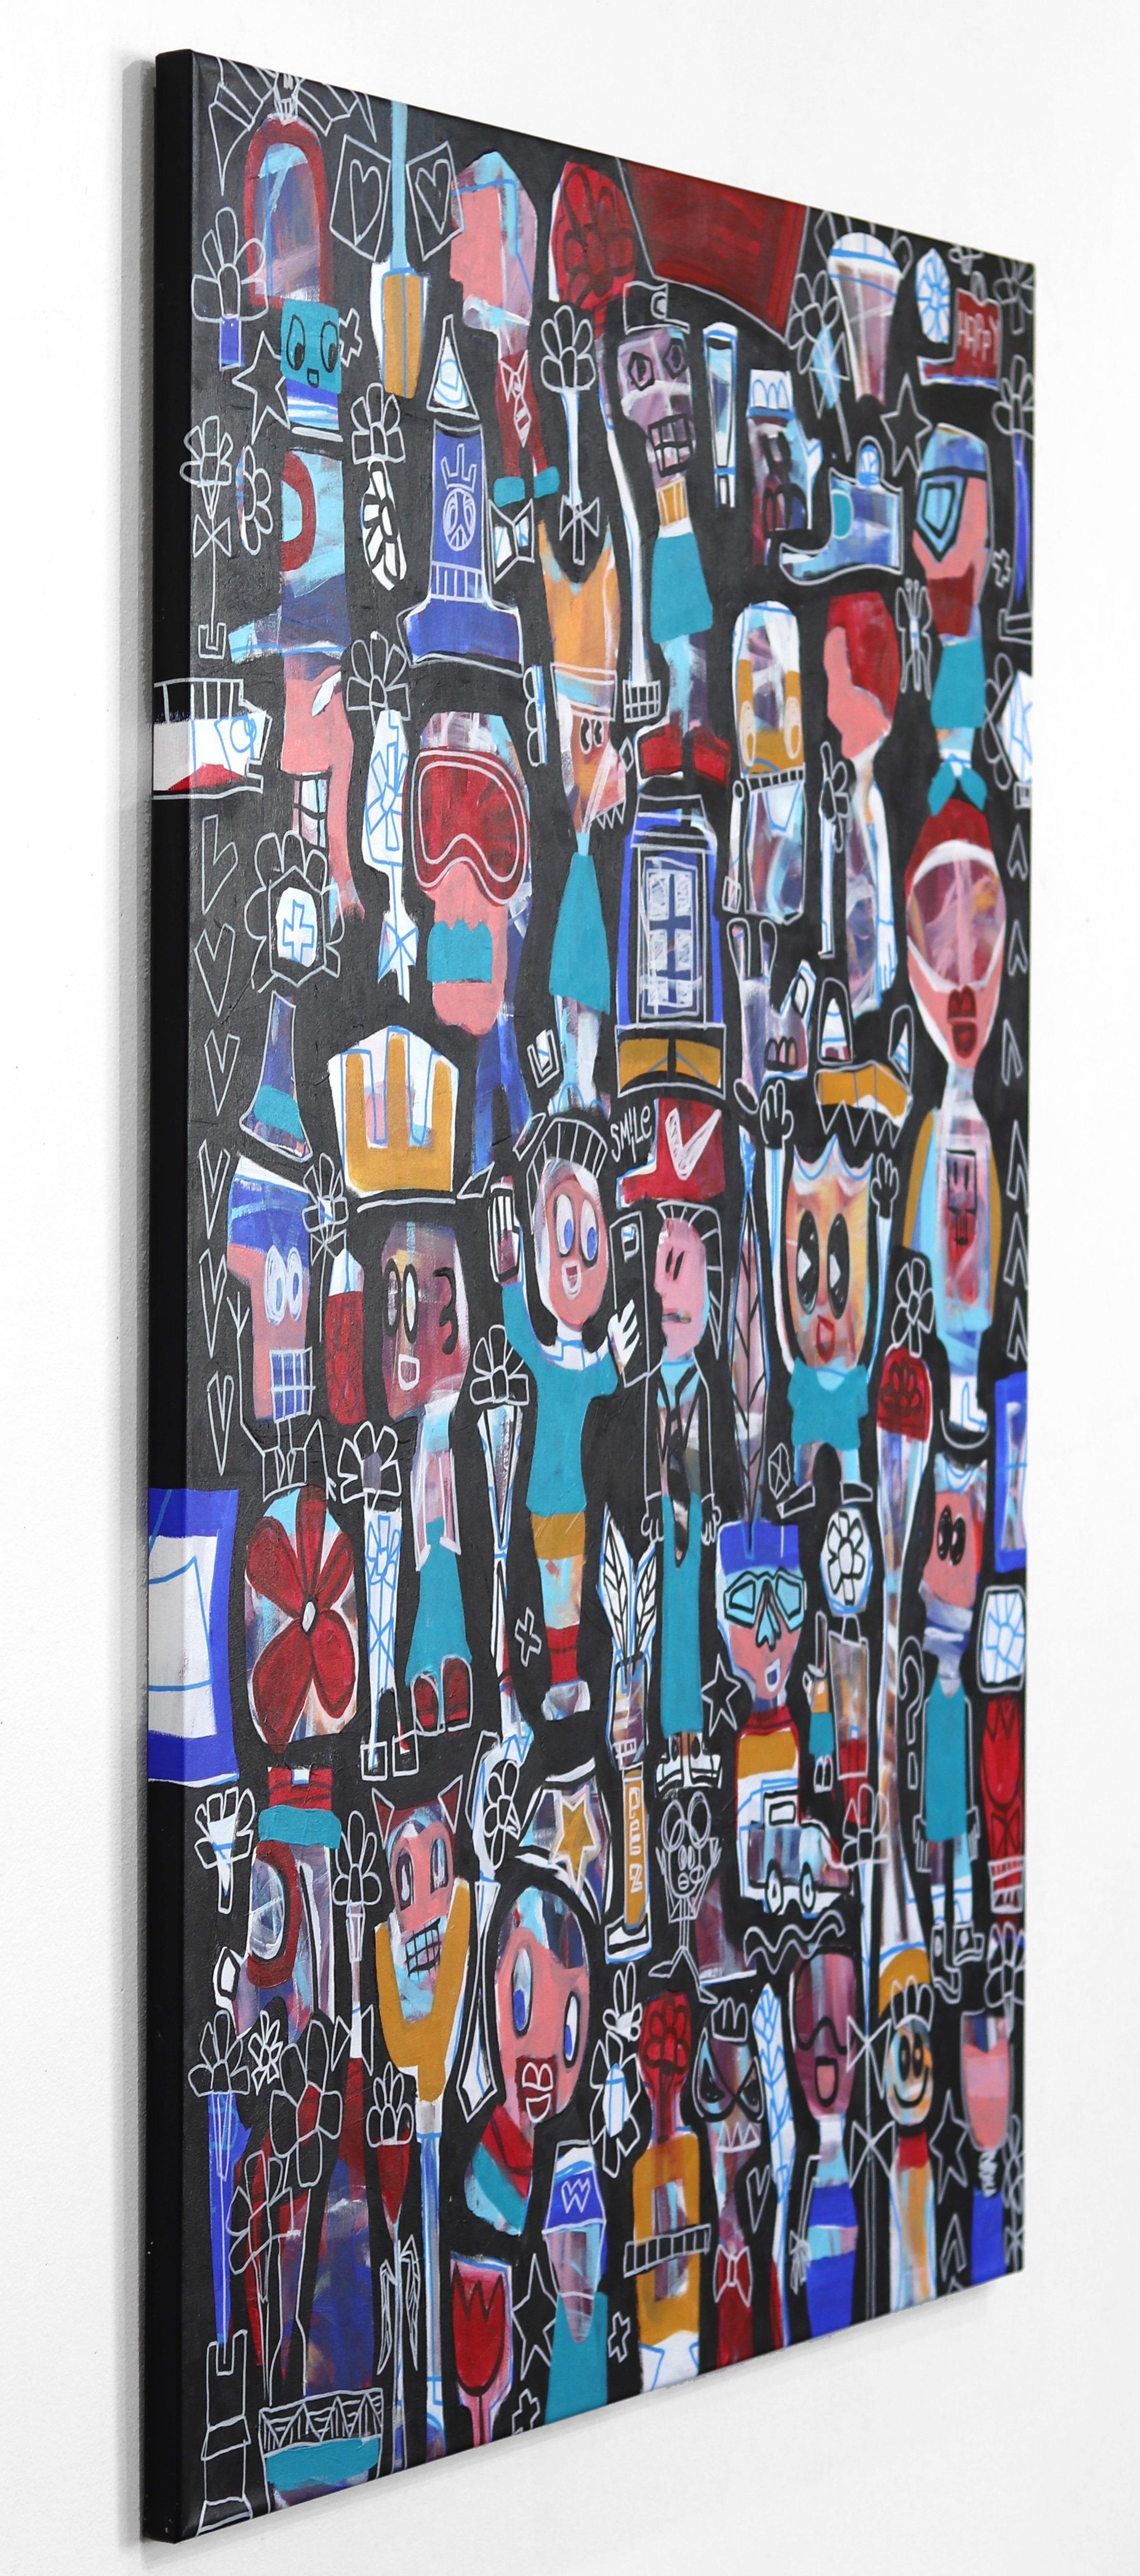 Hands Up - Freunde und Familie Neoexpressionistisches großes Gemälde auf Leinwand (Schwarz), Abstract Painting, von Tommy Lennartsson